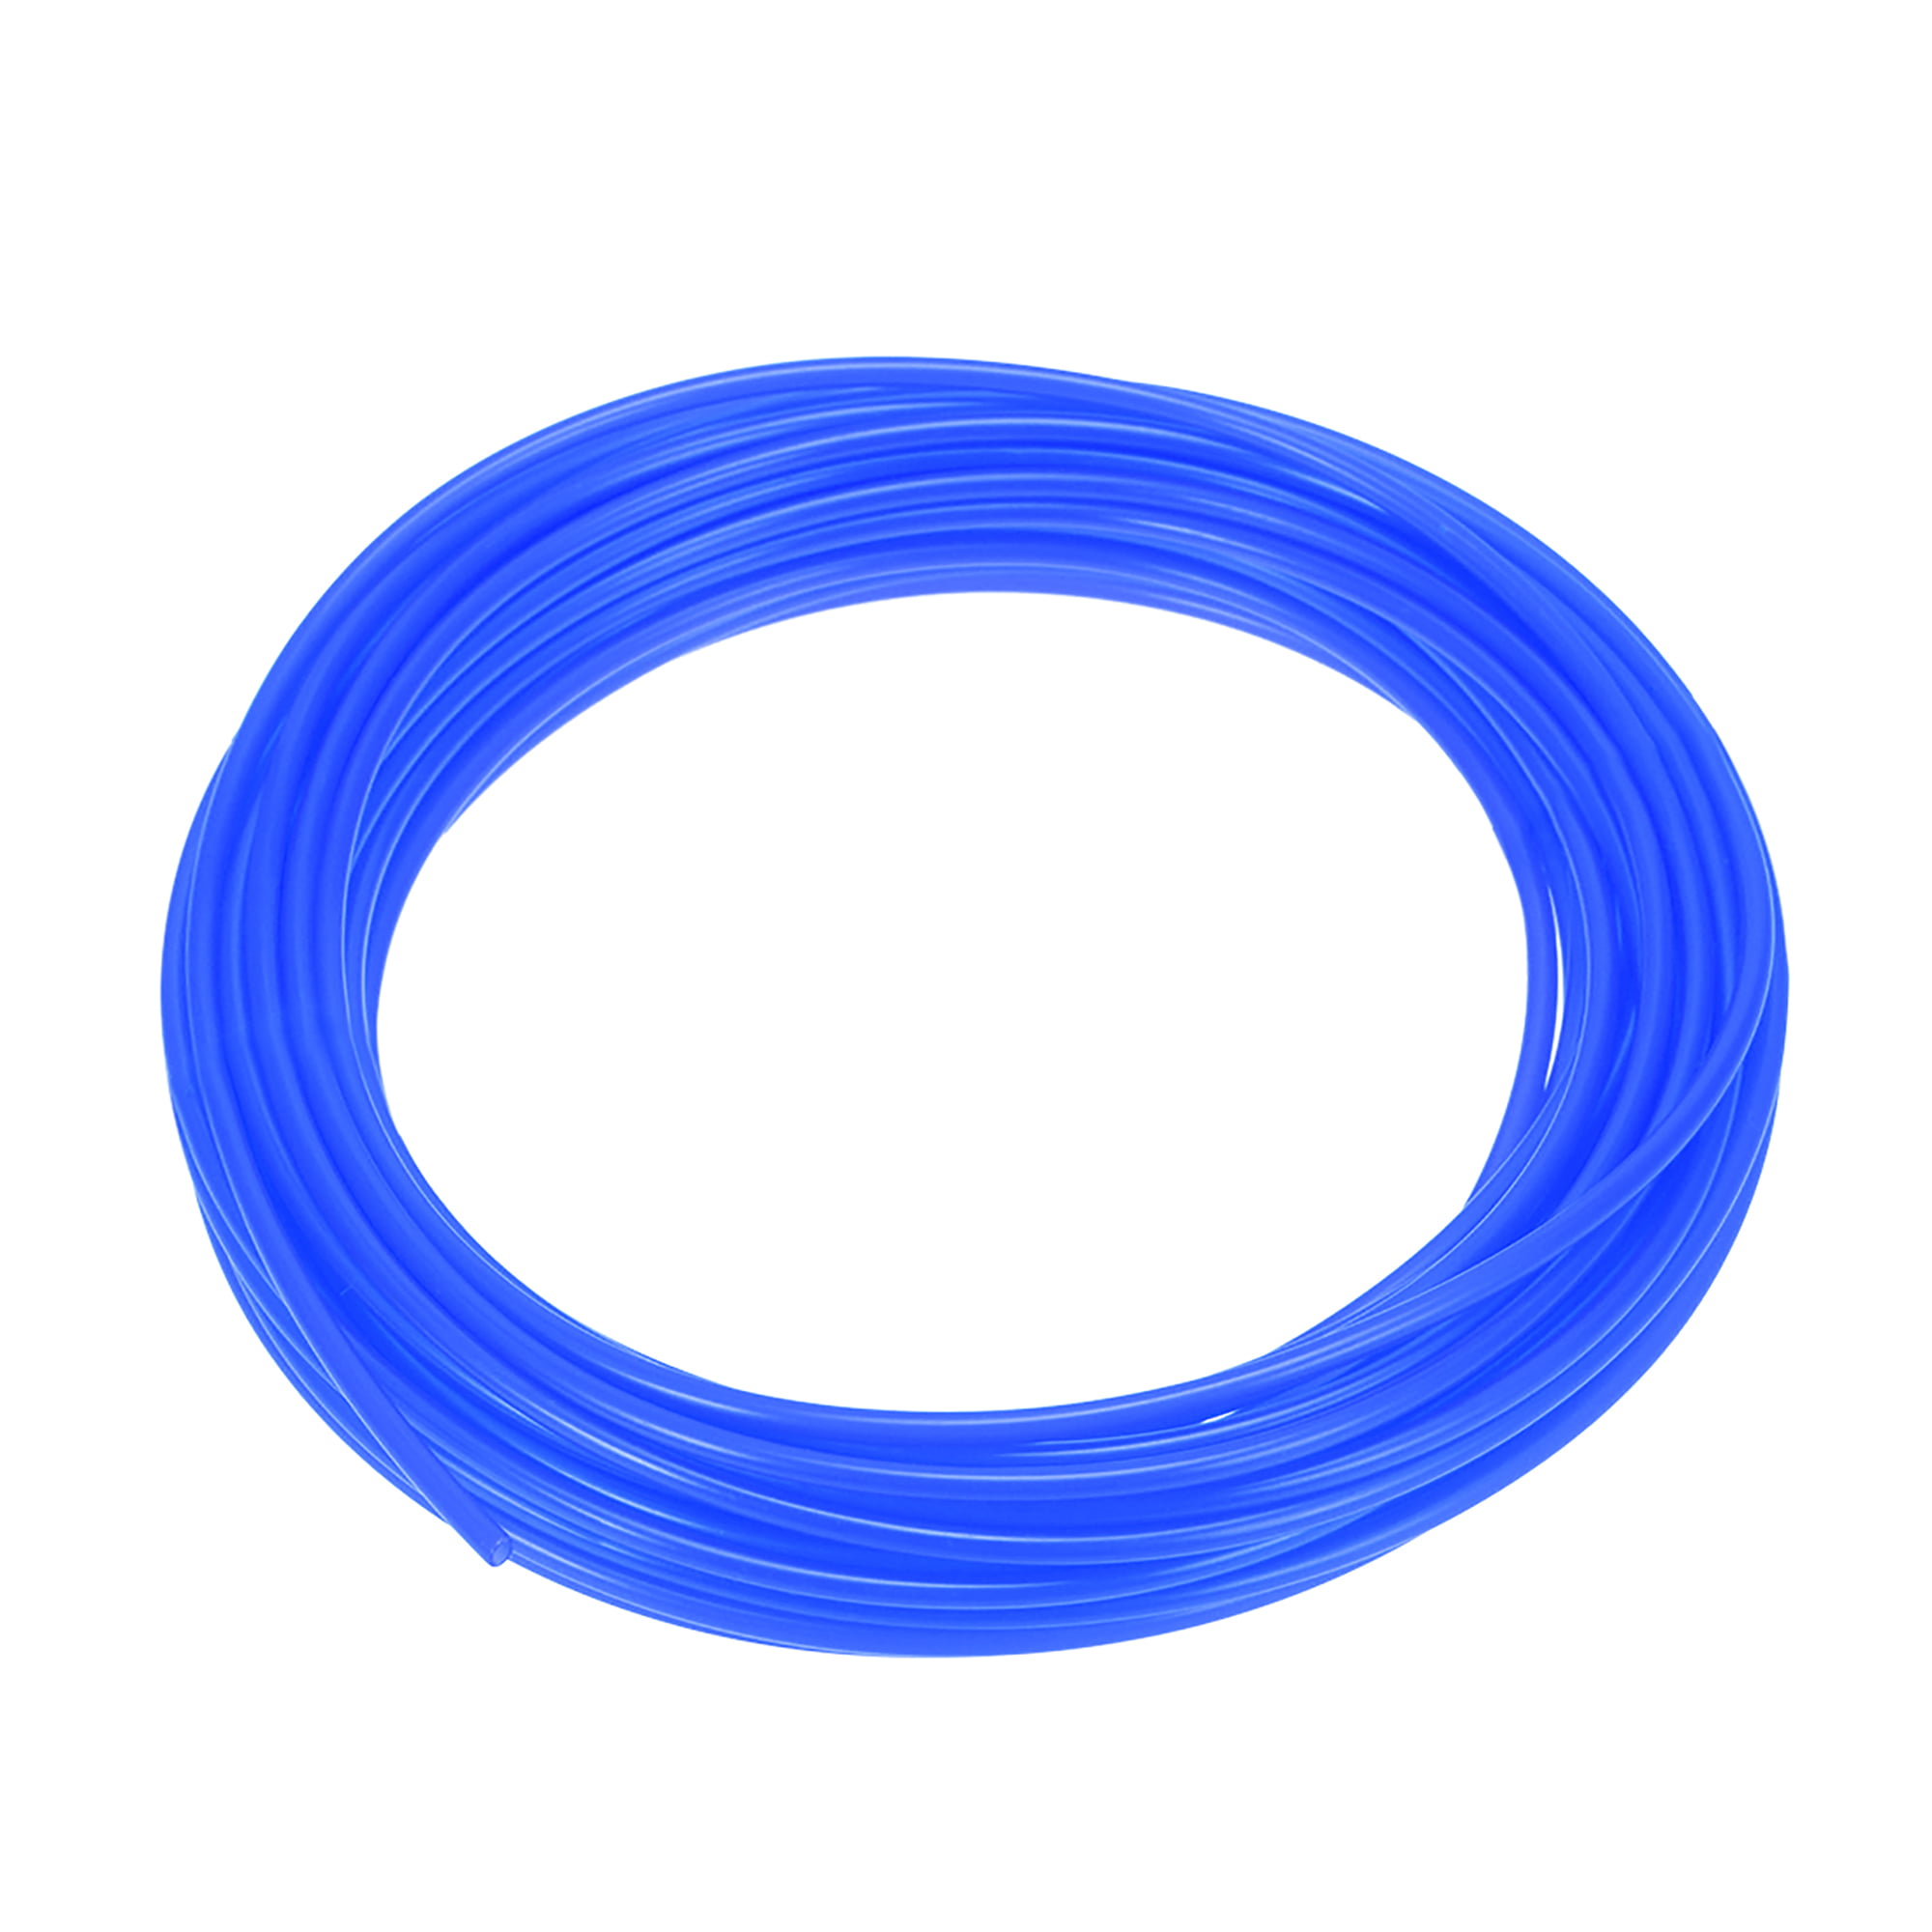 PE Plastic Tubing 3/32 Inch ID x 5/32 Inch OD 32.8 Feet Length Blue 